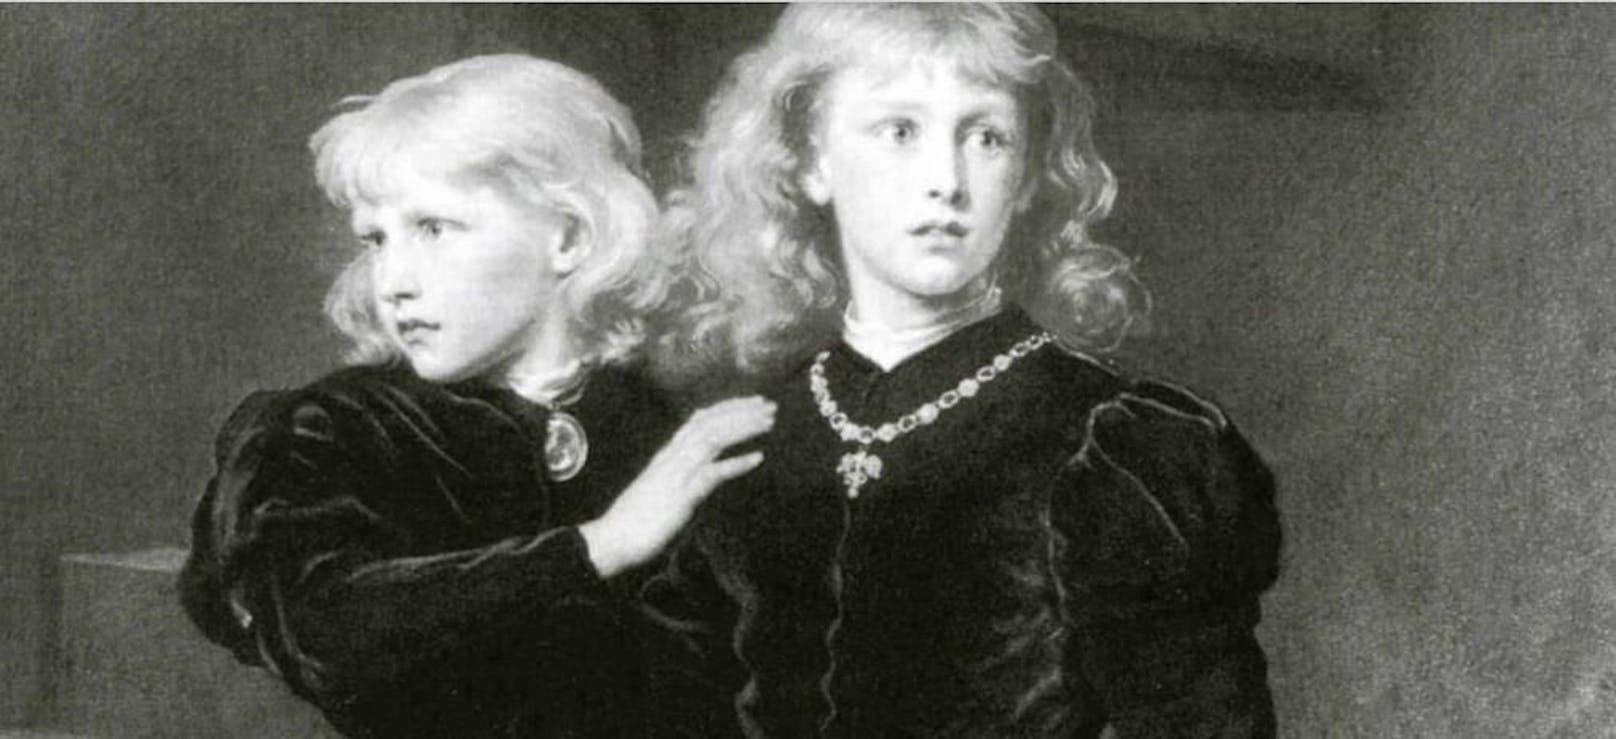 Prinz Edward V. (rechts) und sein Bruder Richard verschwanden im Jahr 1483 spurlos im Tower von London